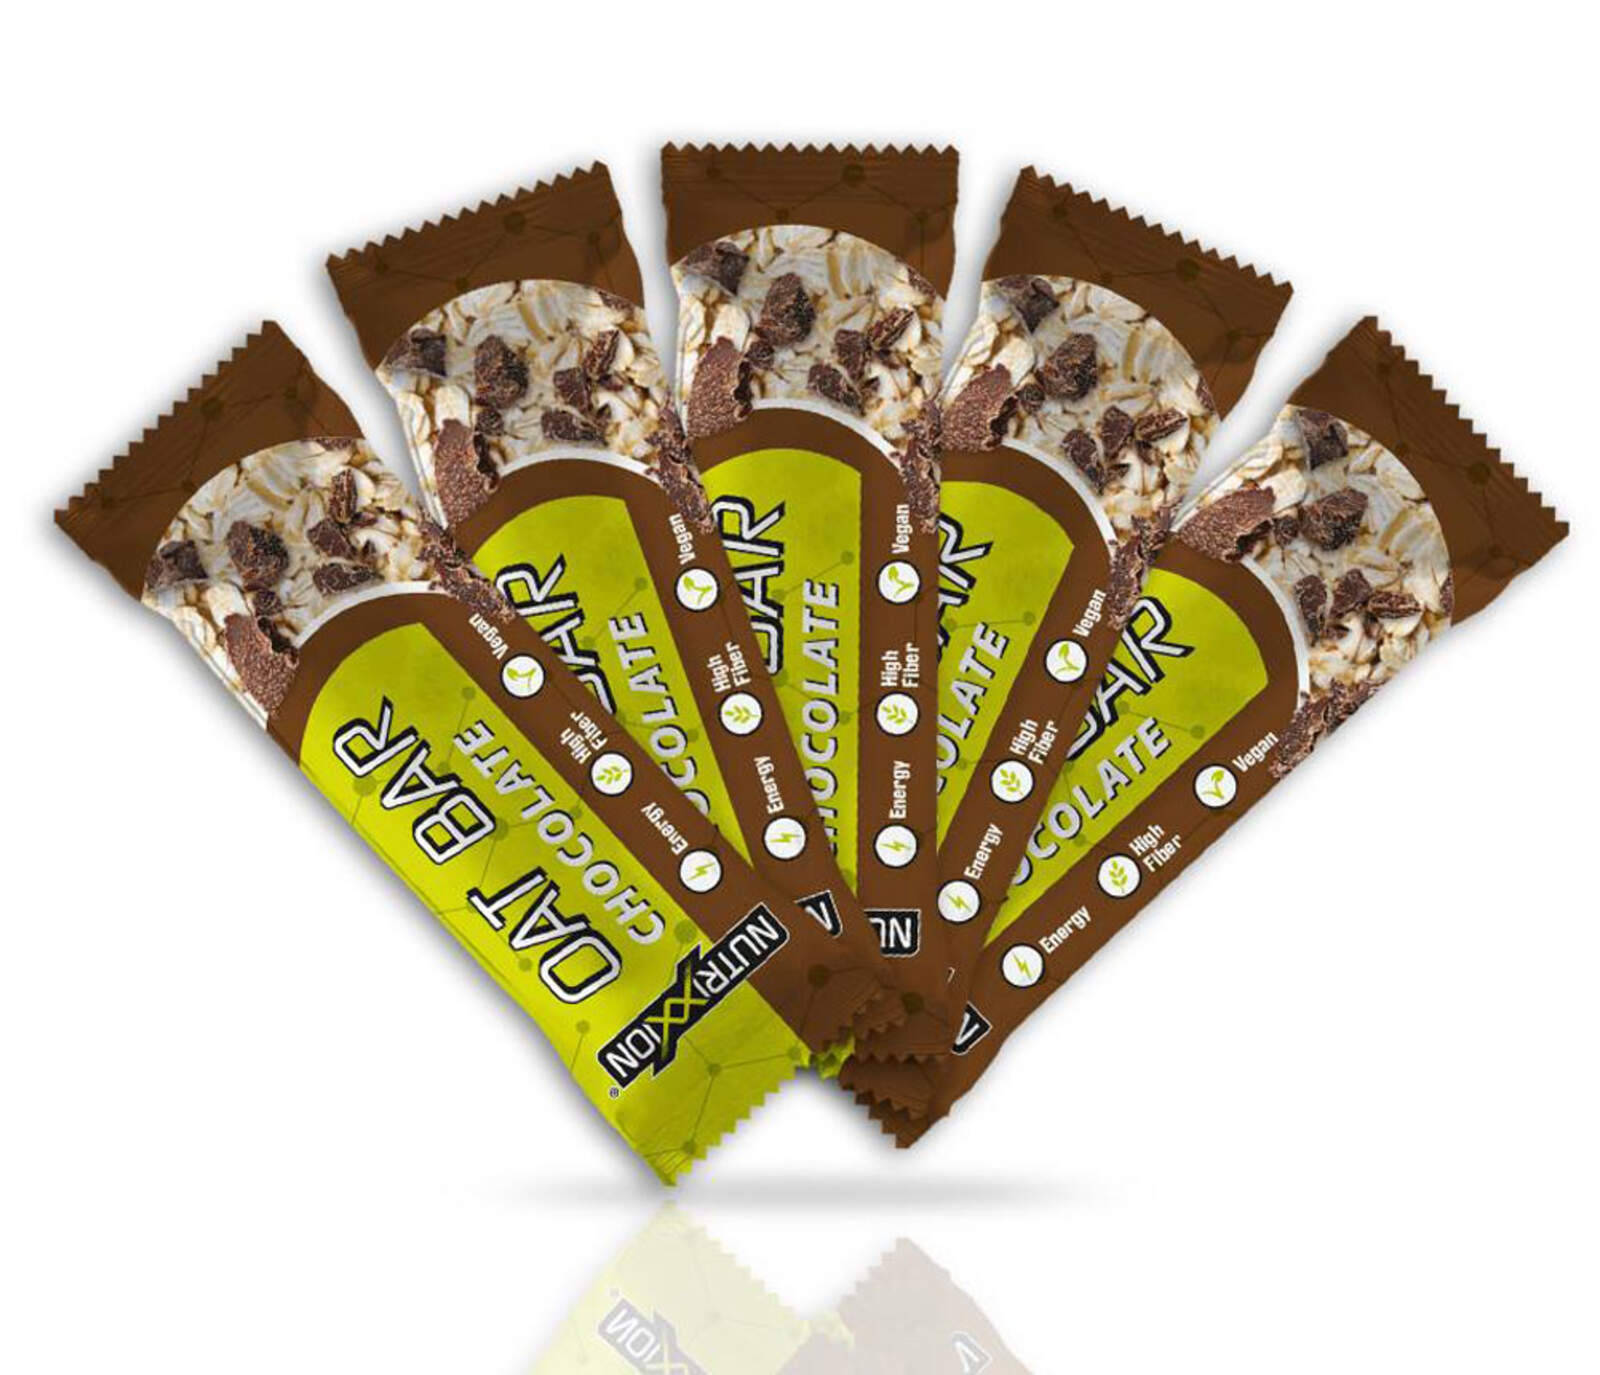 NUTRIXXION Énergie Oat Riegel Vegan
Chocolate 5 x 50g